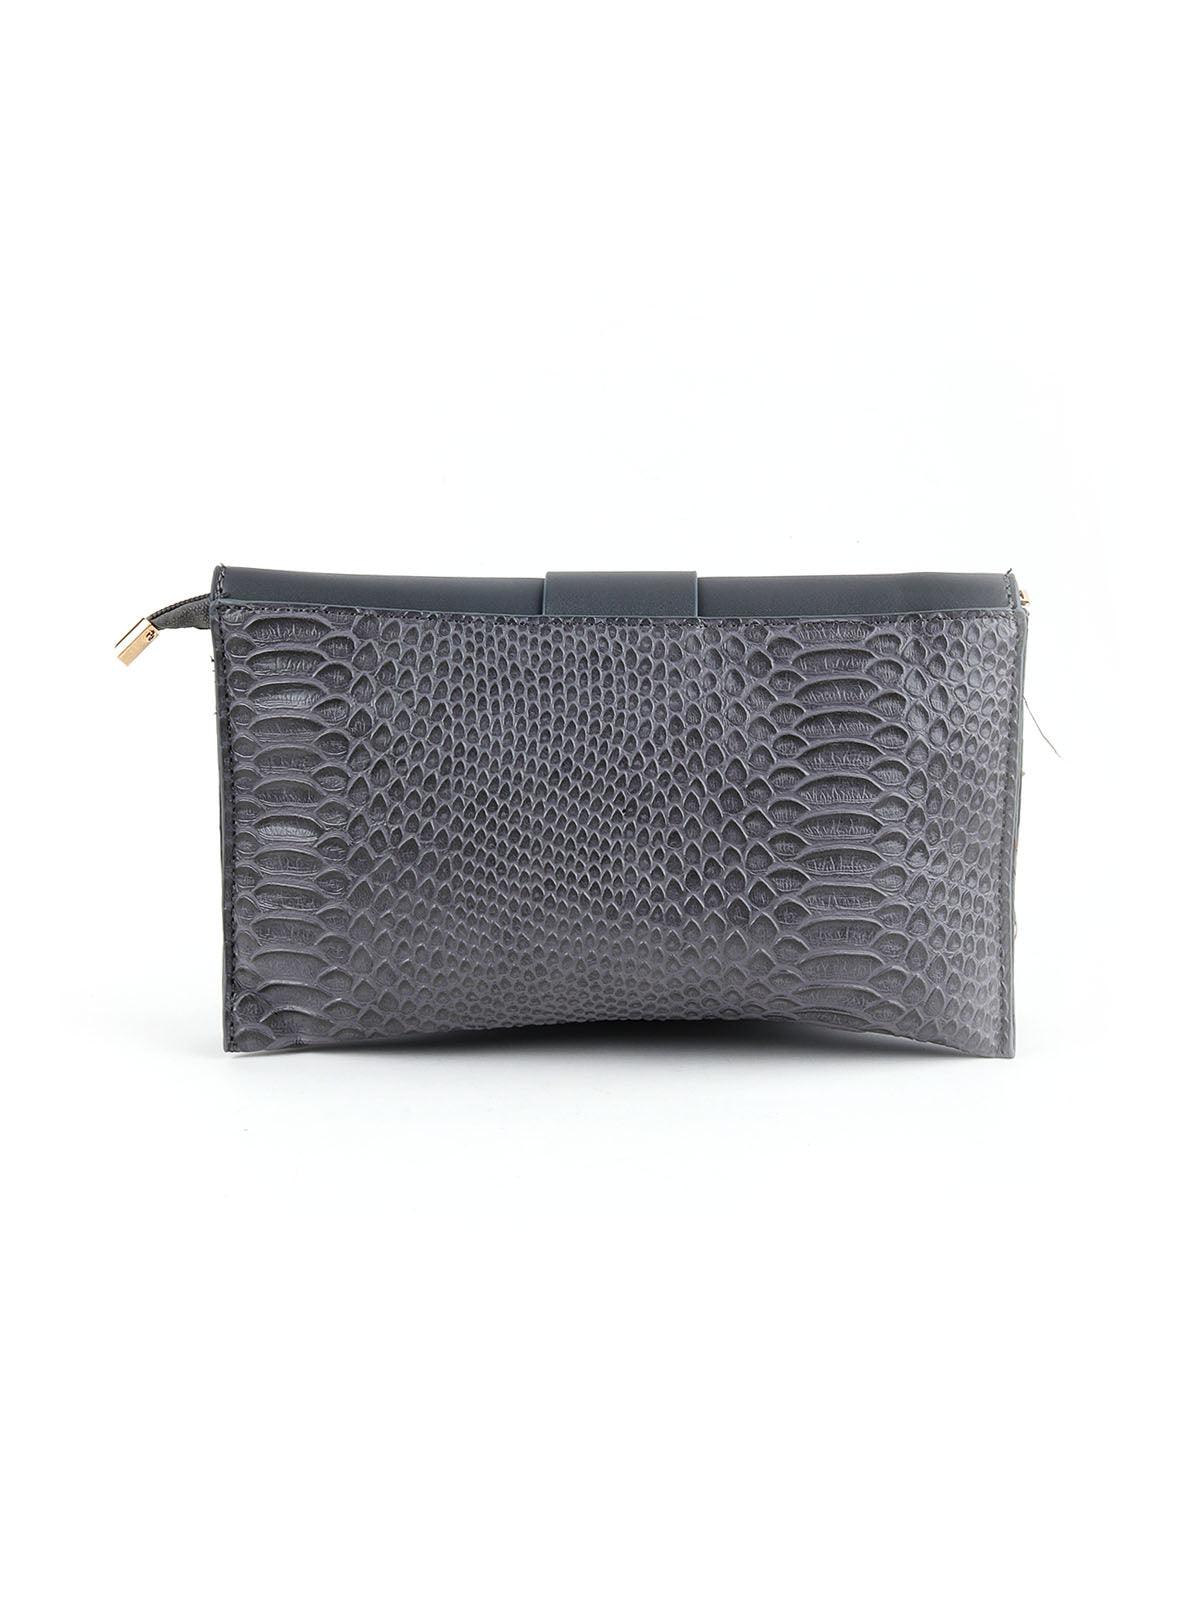 Cadet Grey Textured Envelope Handbag - Odette